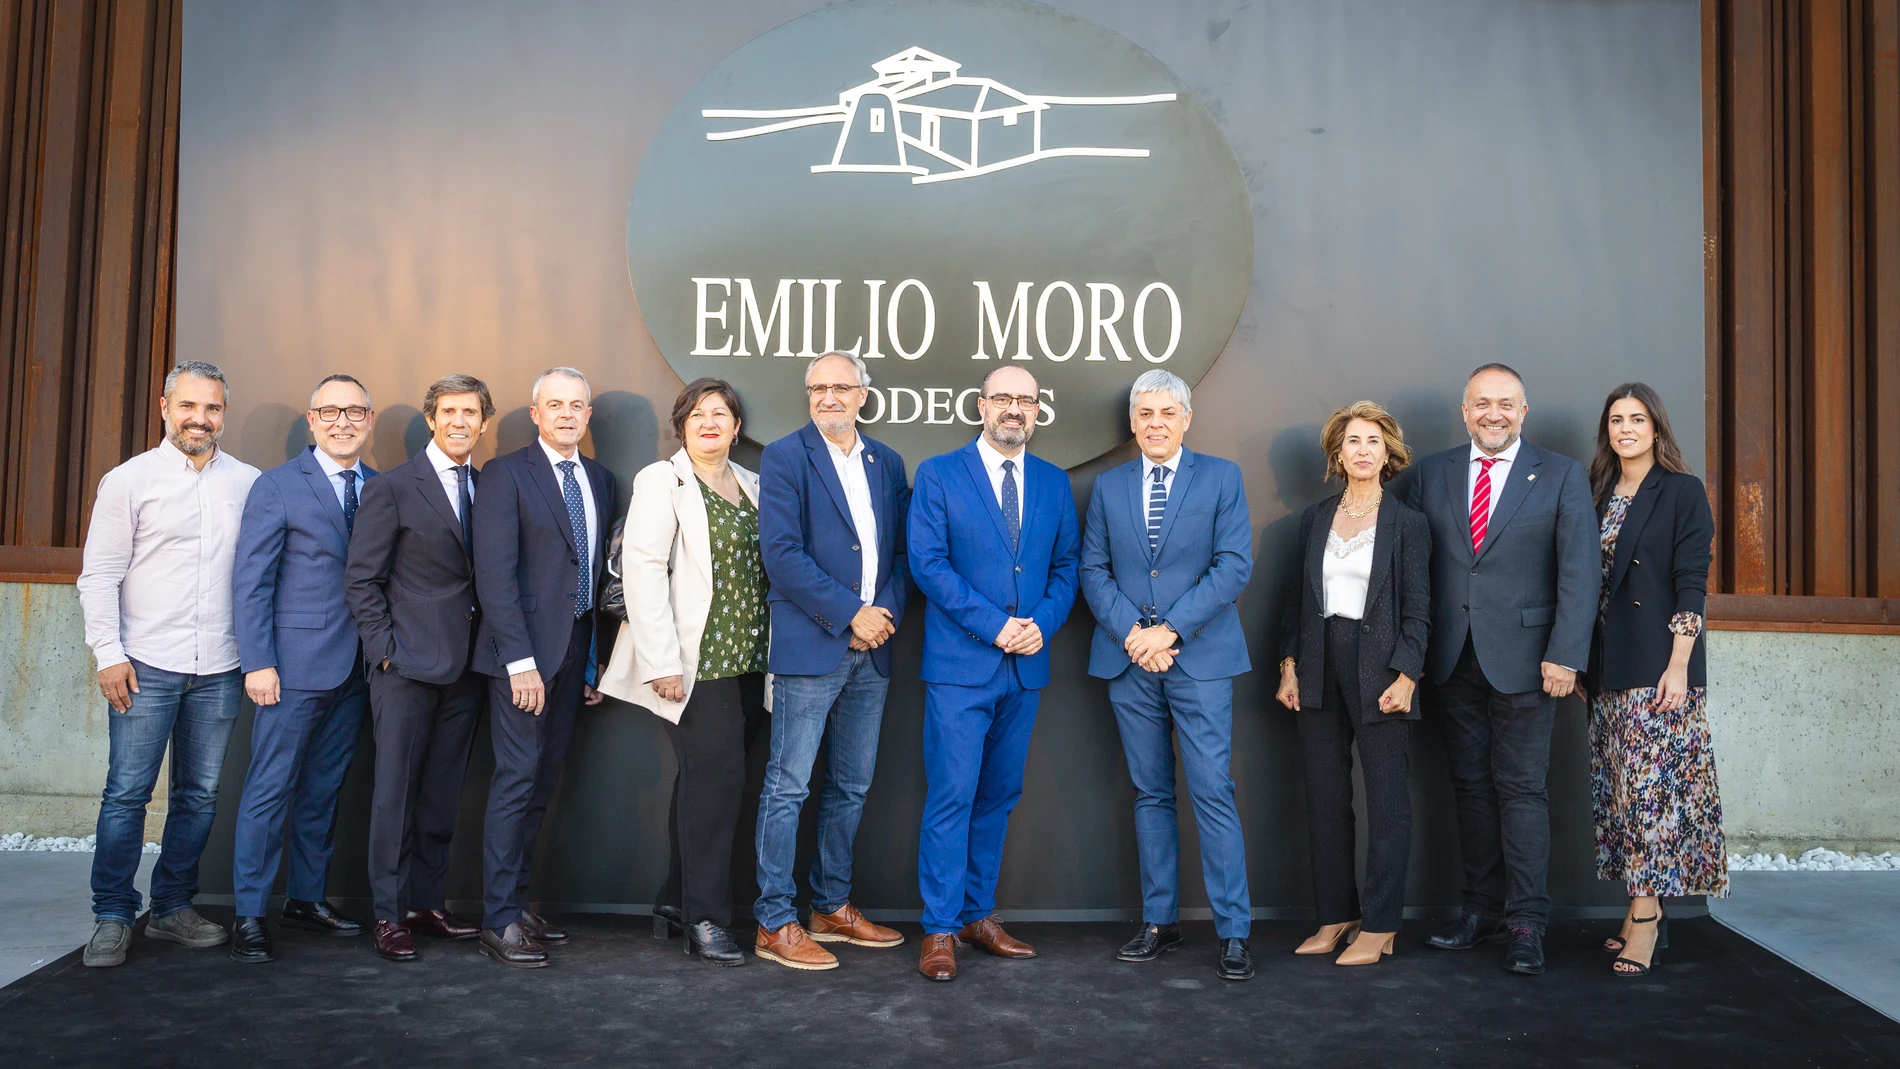 La familia Emilio Moro junto a los representantes políticos en la apertura de la nueva bodega